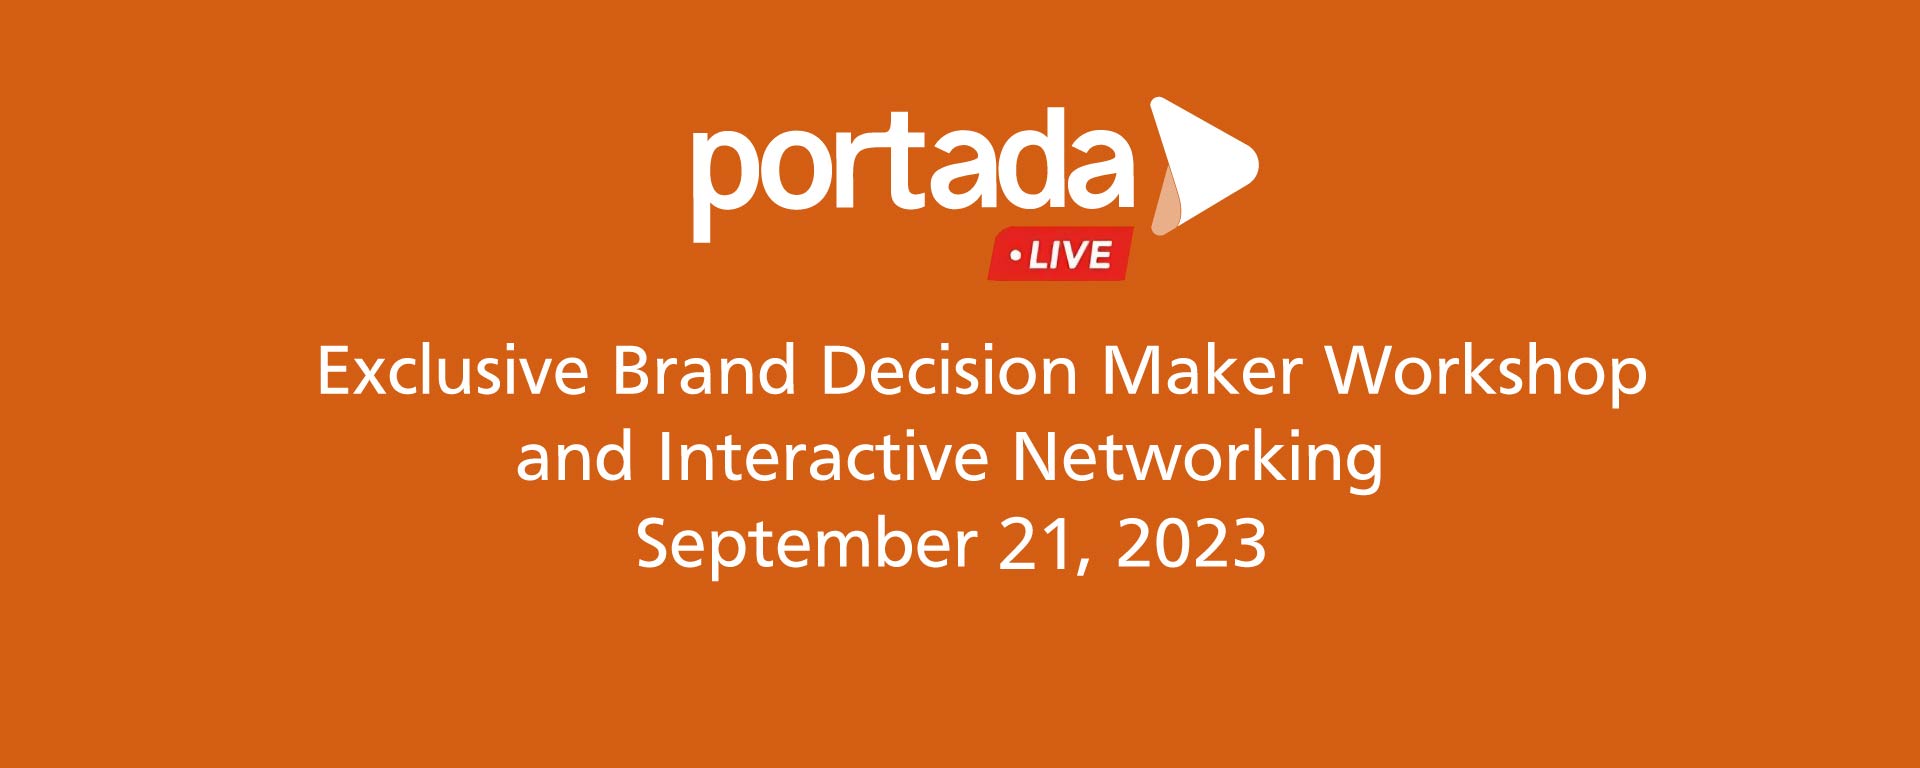 Portada Live, September 21, 2023